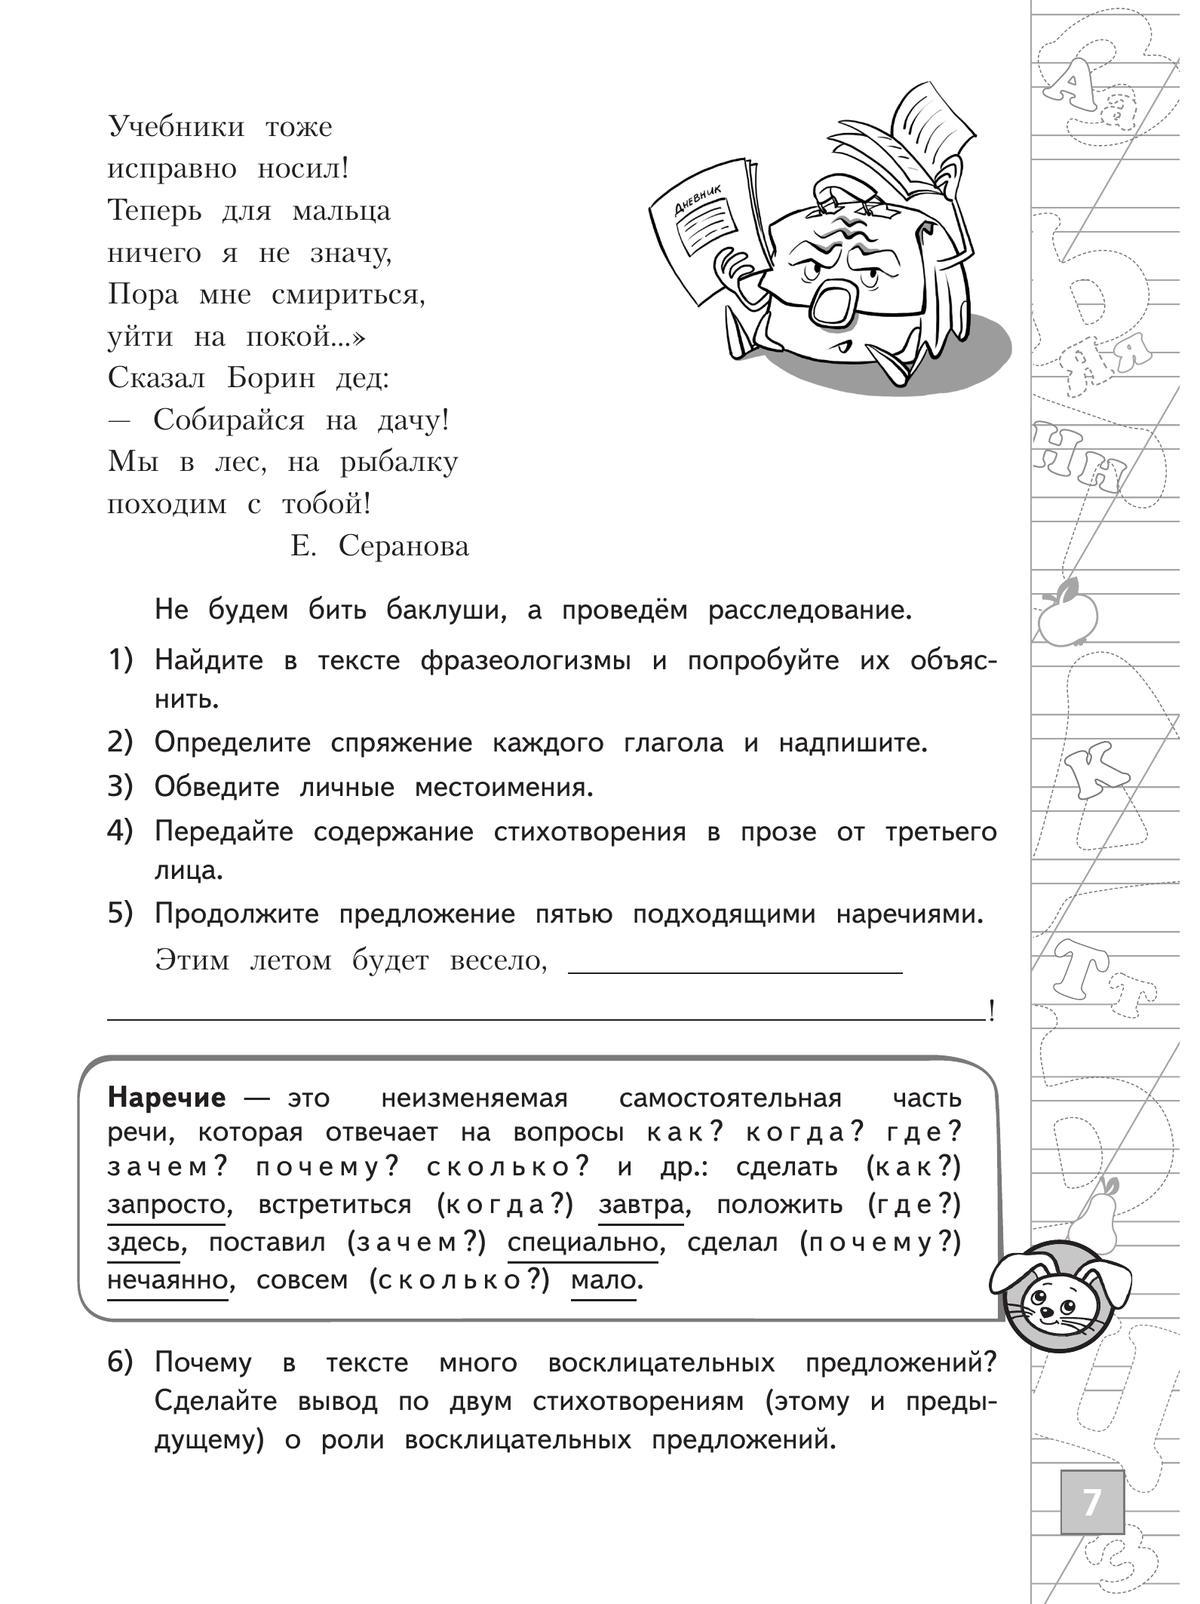 Русский язык. Тетрадь летних заданий. 4 класс 4